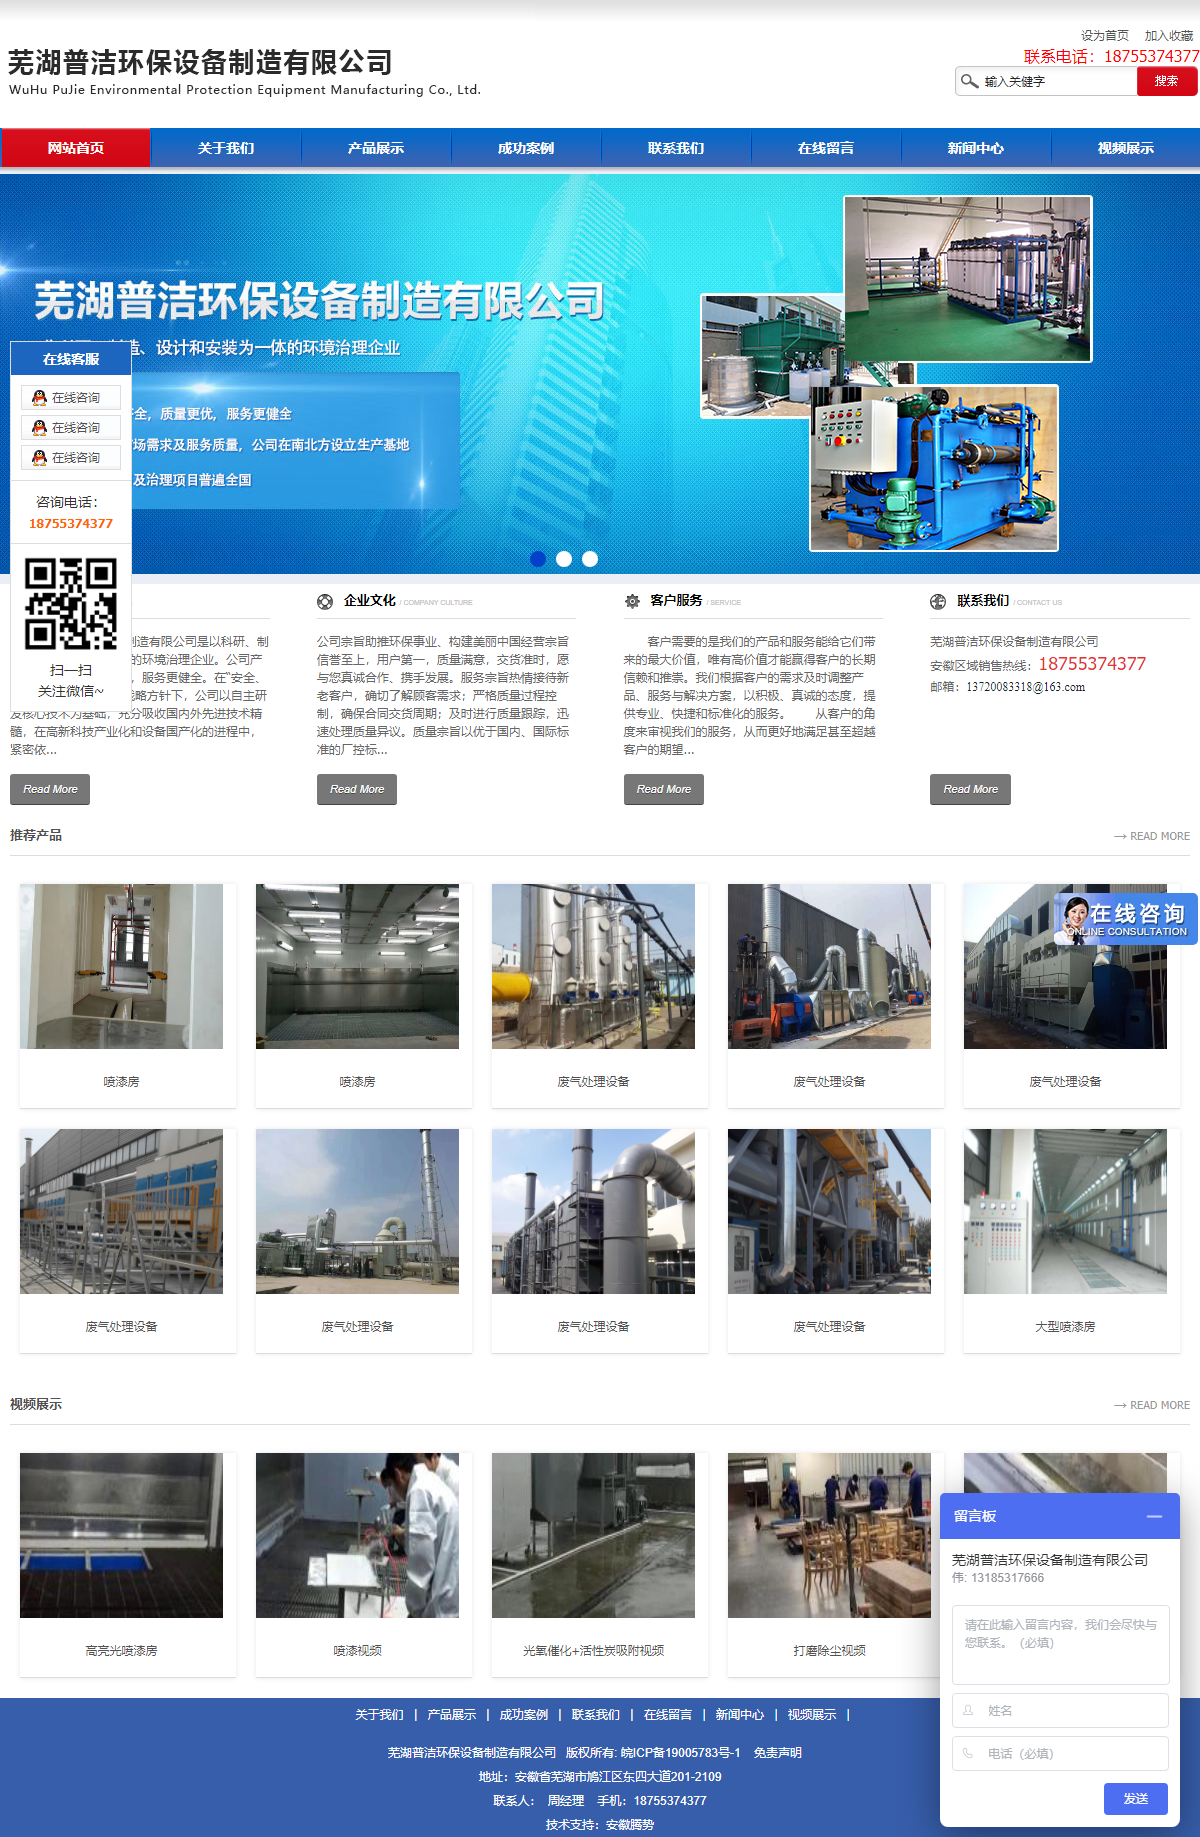 芜湖普洁环保设备制造有限公司网站案例